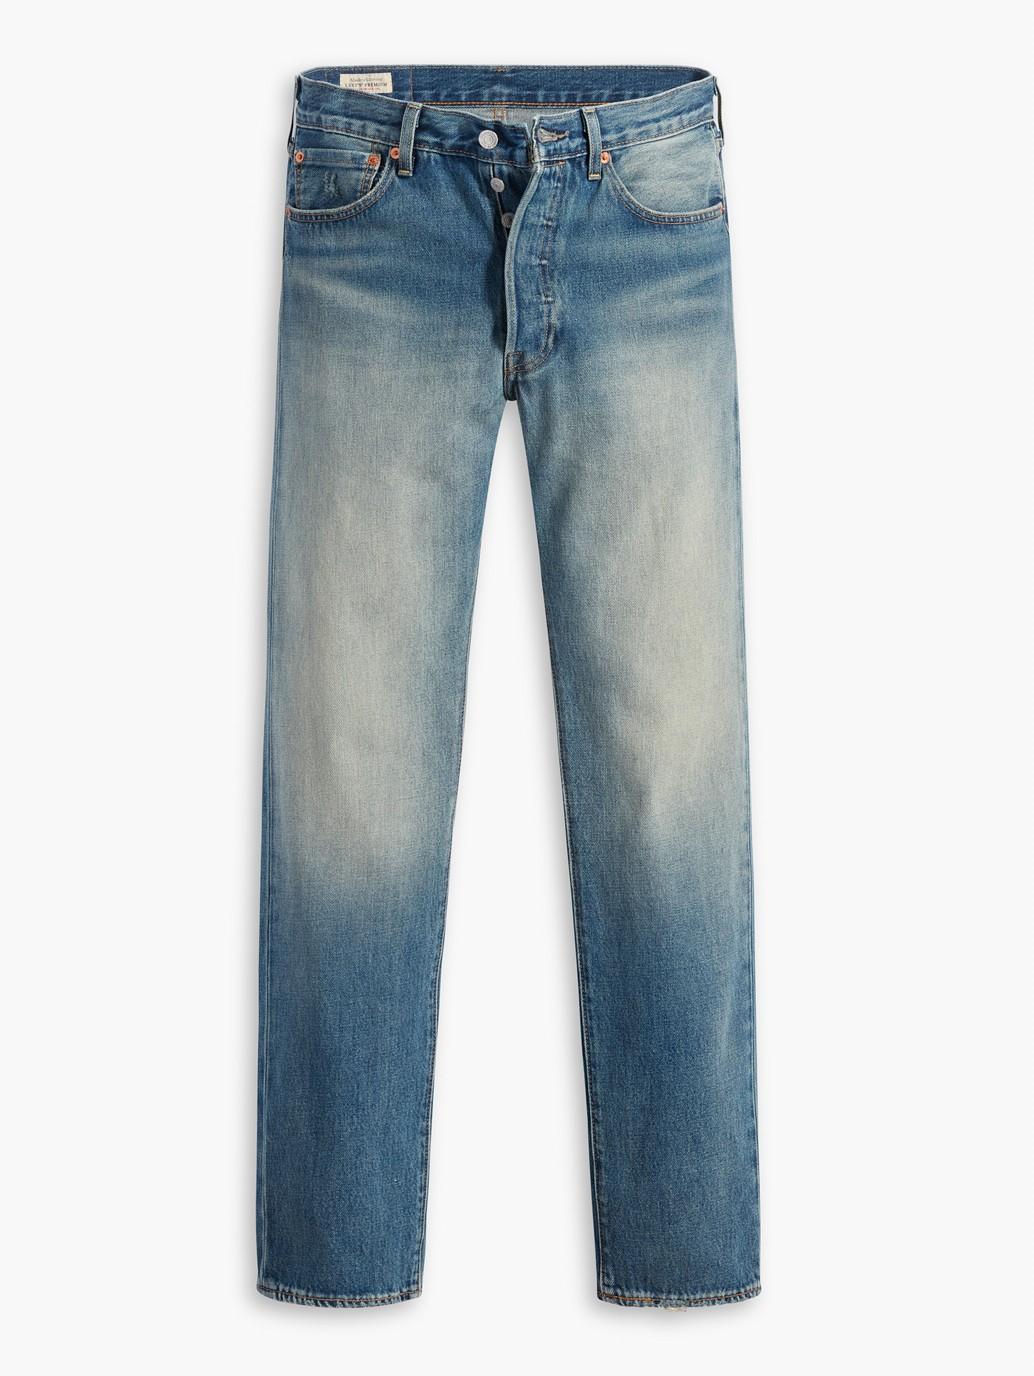 Buy Levi's® Men's 501® '54 Jeans| Levi's Official Online Store SG